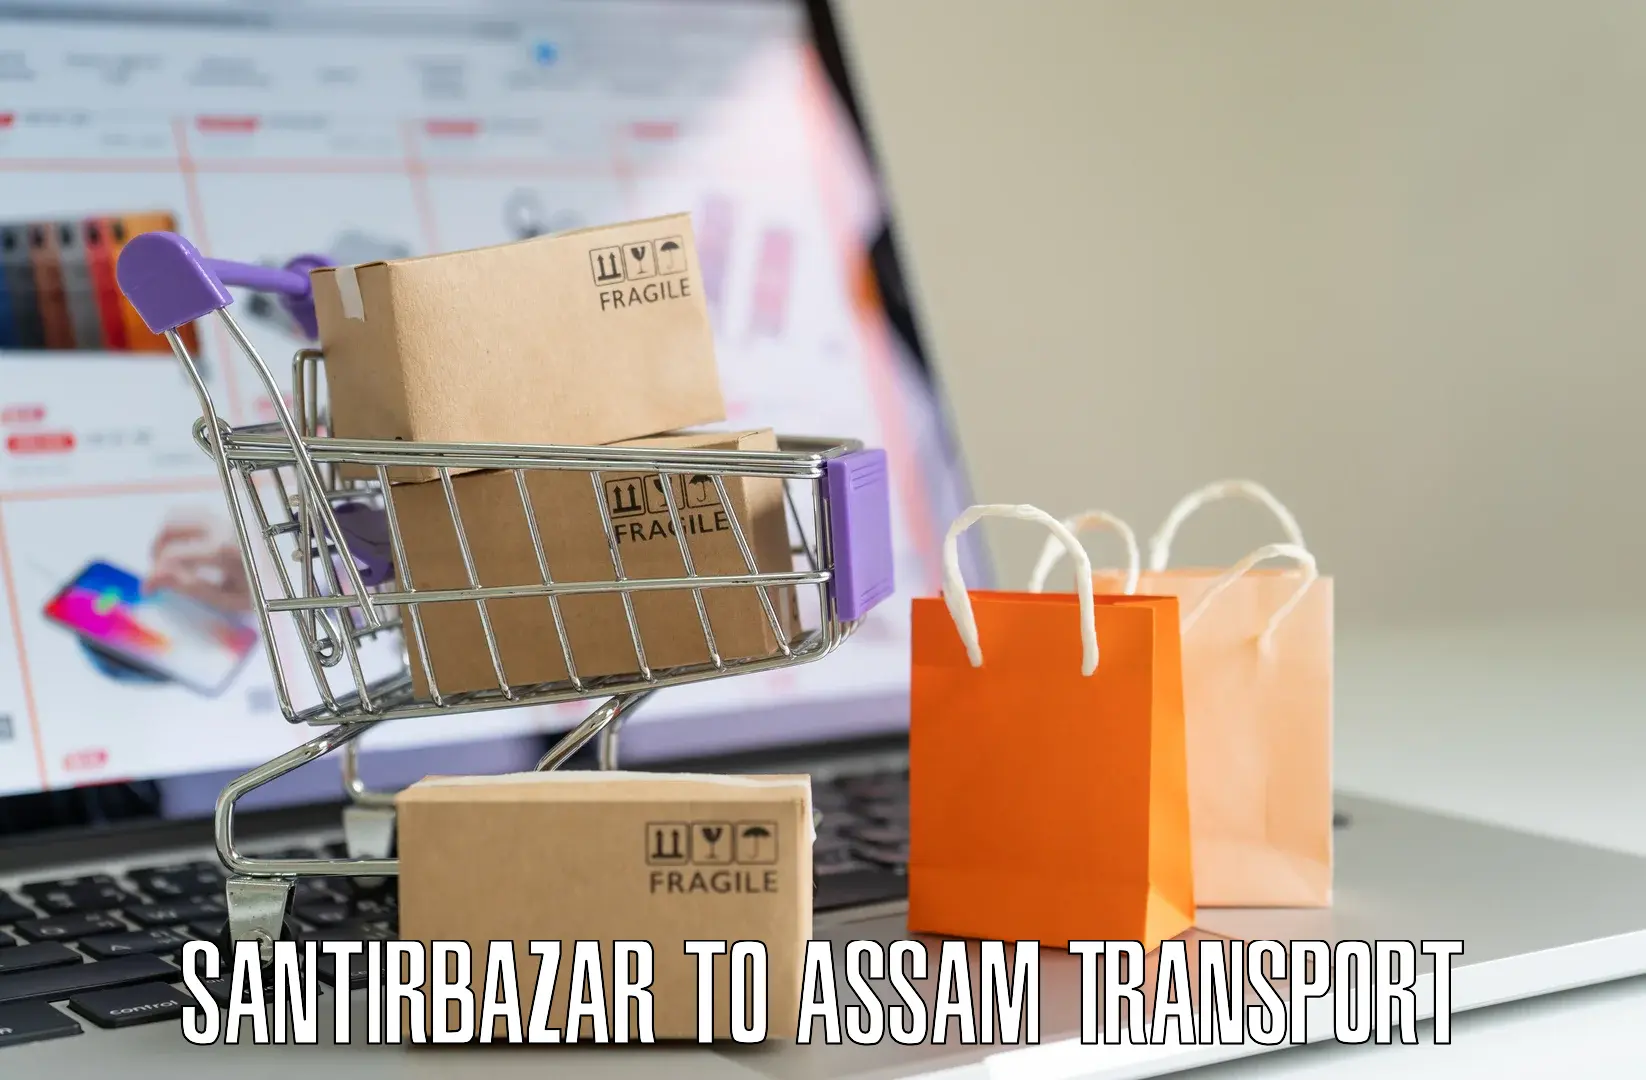 Transport shared services Santirbazar to Sivasagar